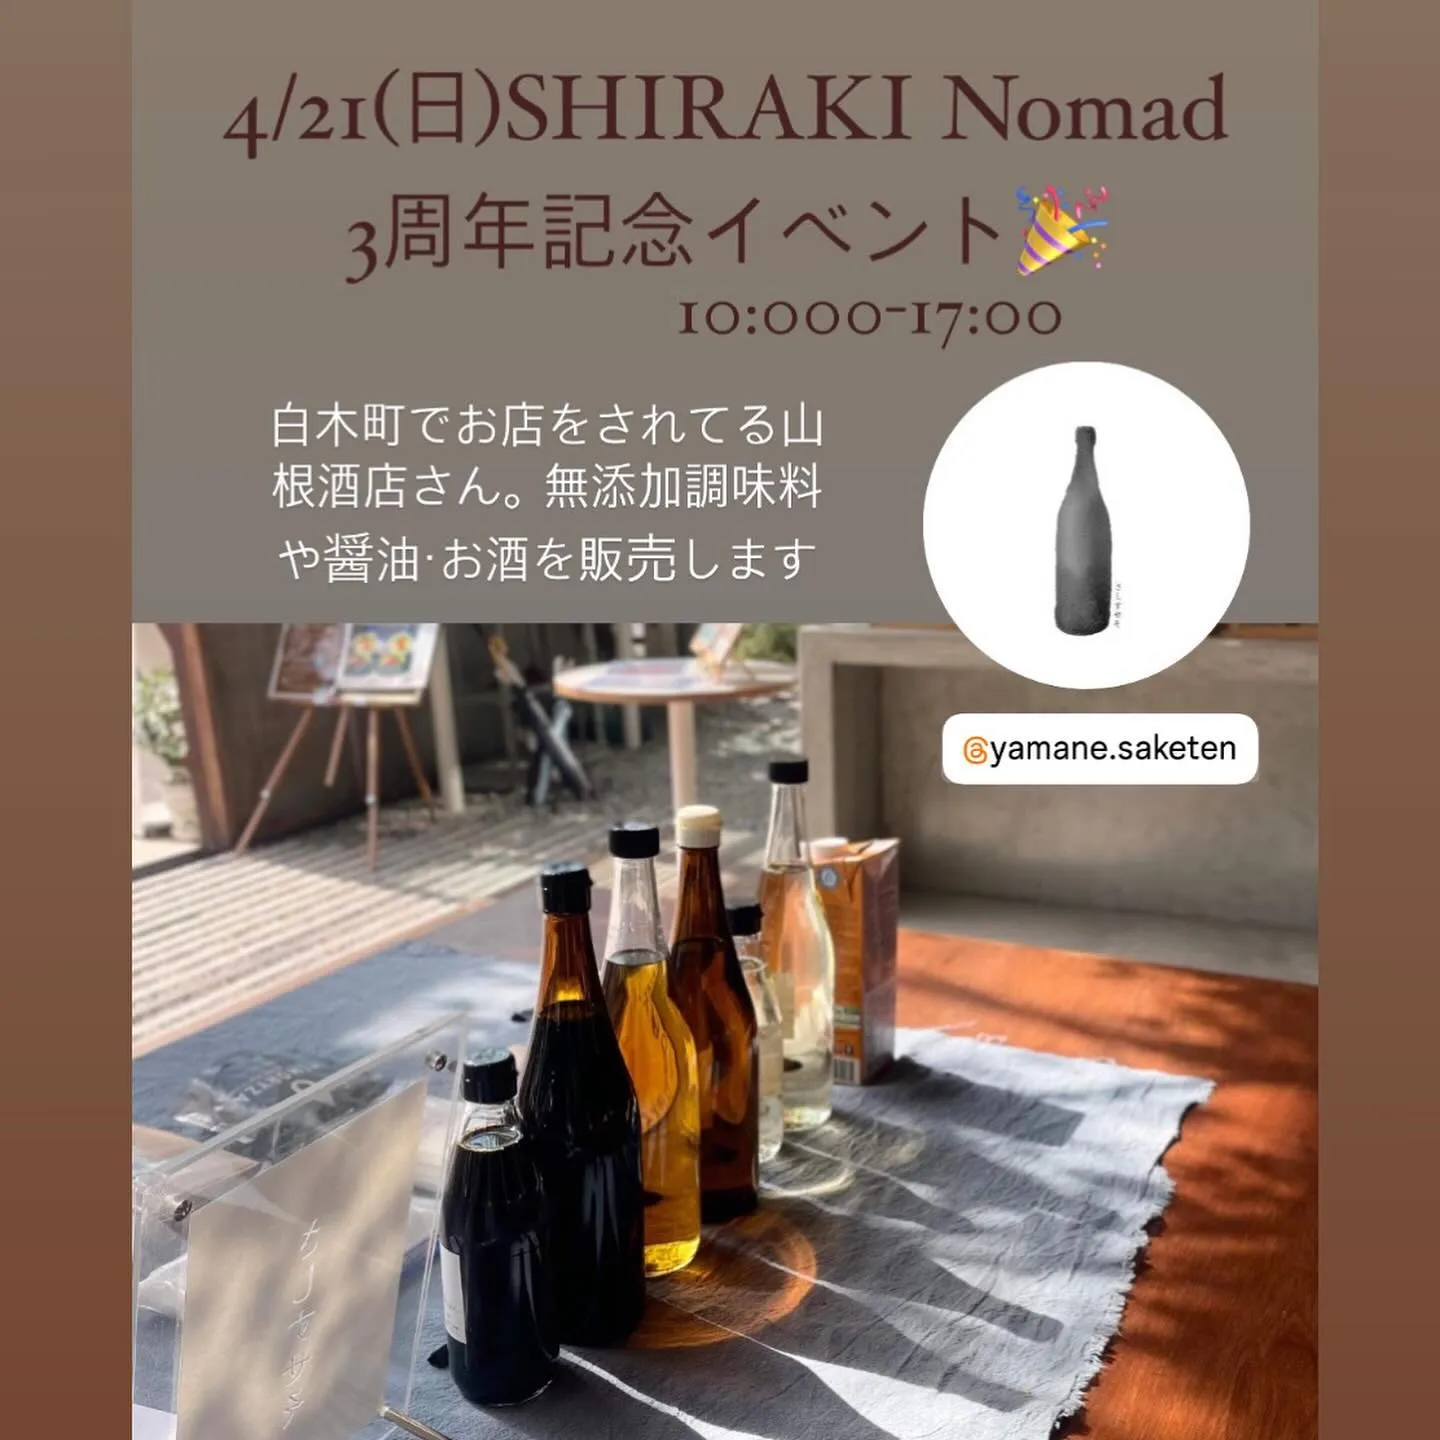 SHIRAKI Nomad３周年㊗感謝祭！